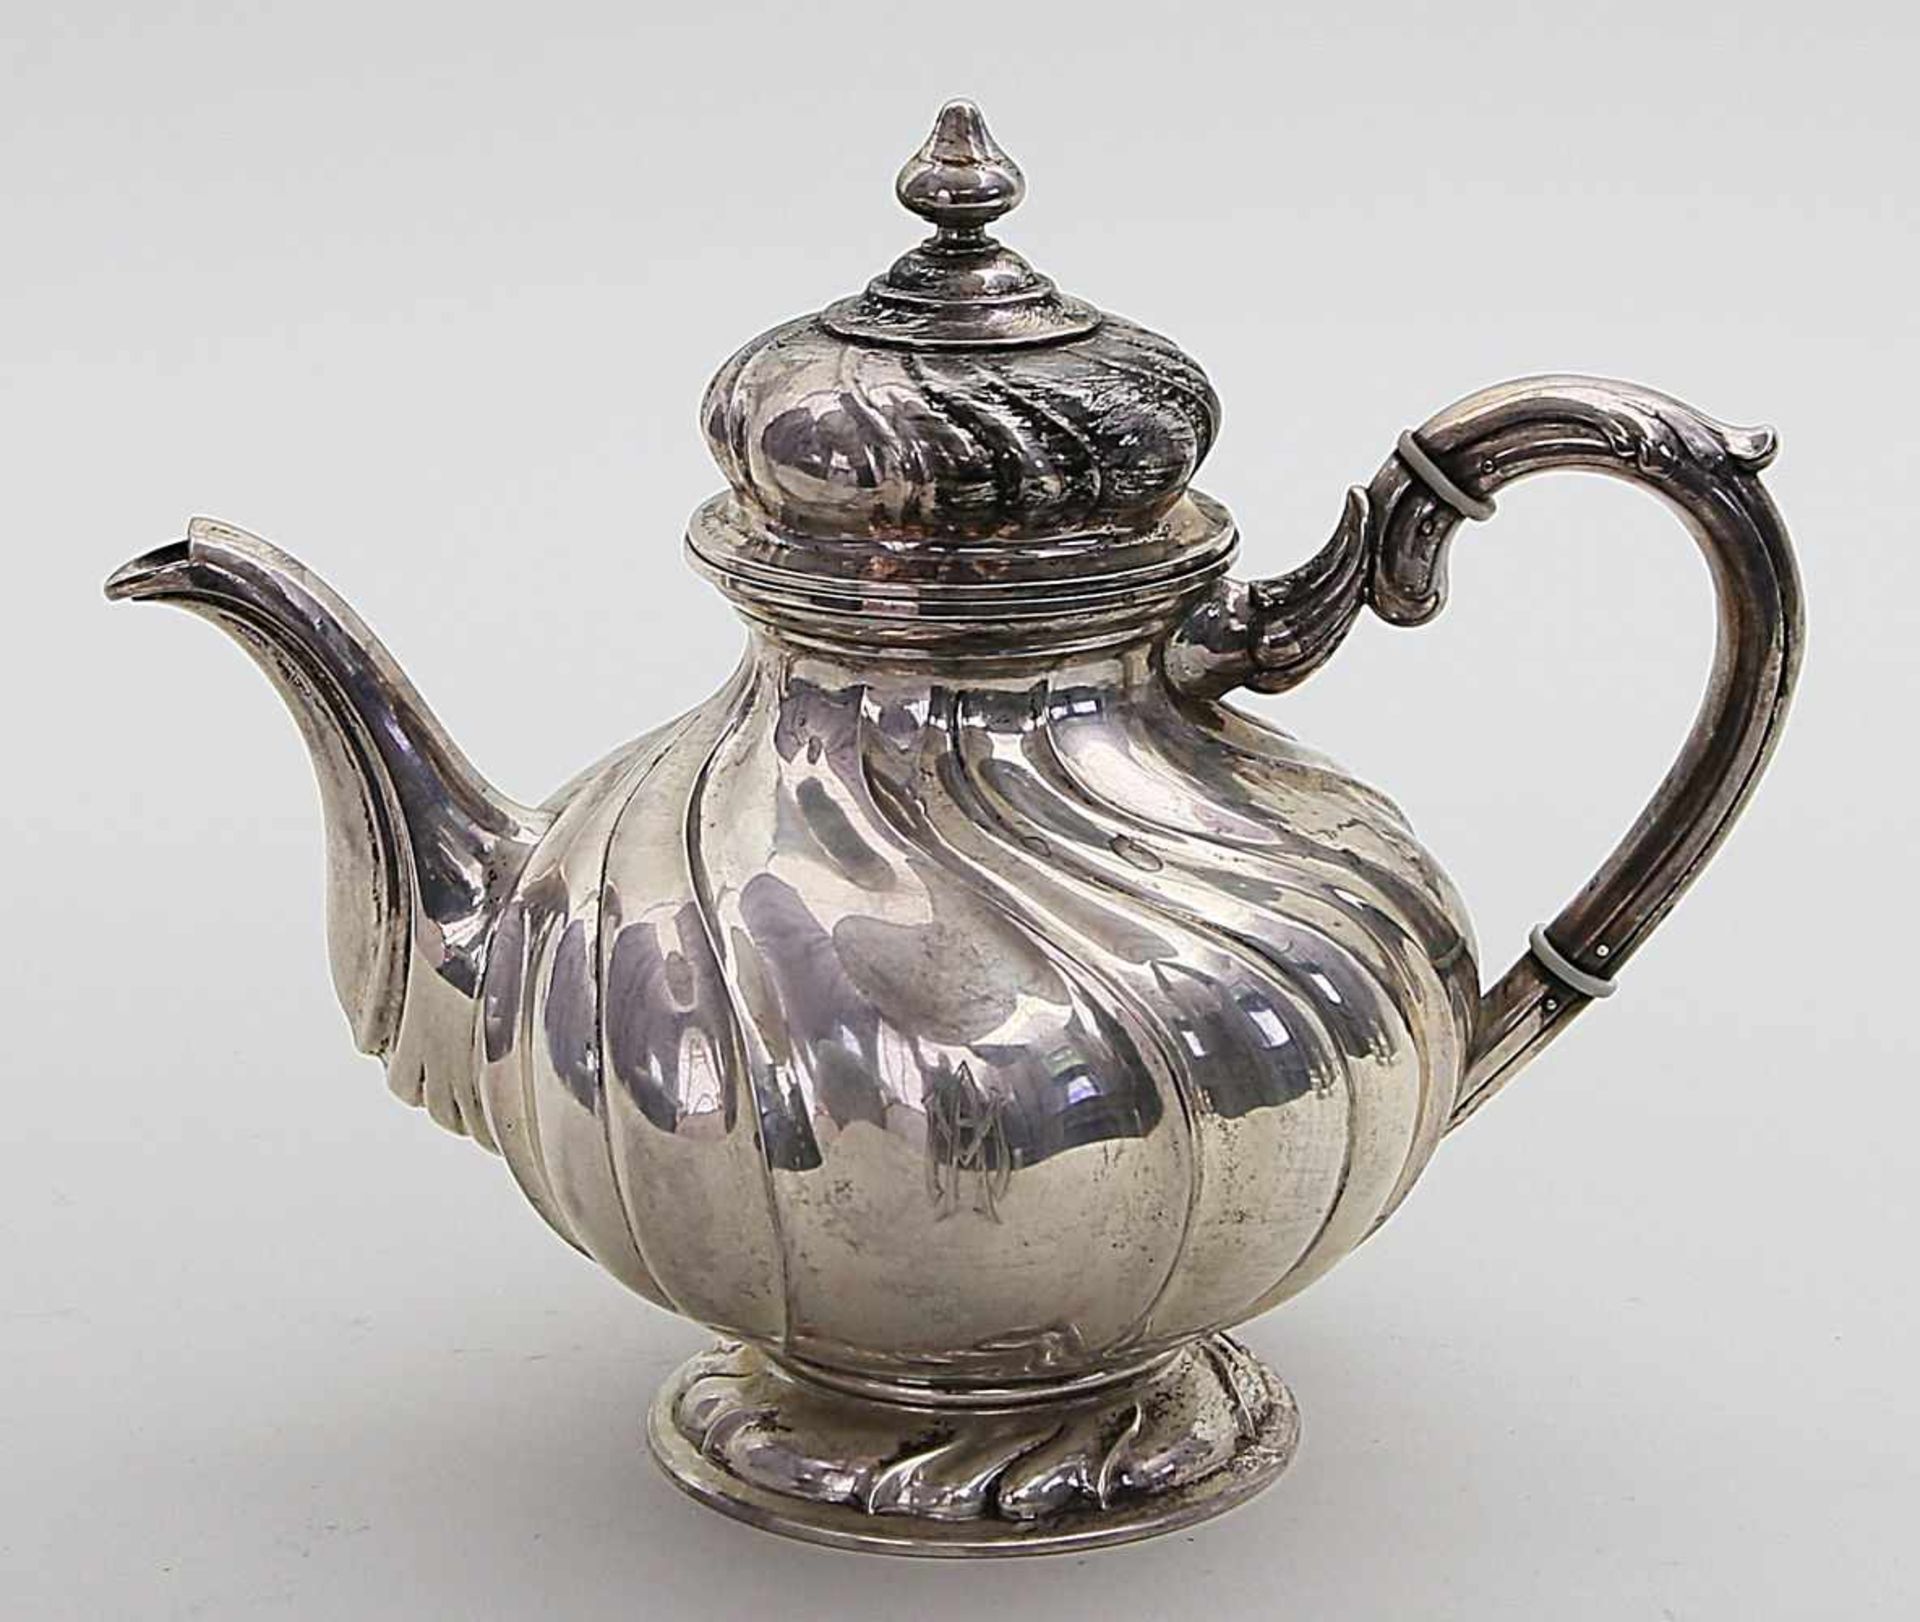 Teekanne im Barockstil.800/000 Silber, 620 g. In der Art des Dresdener Hofmusters, schauseitig